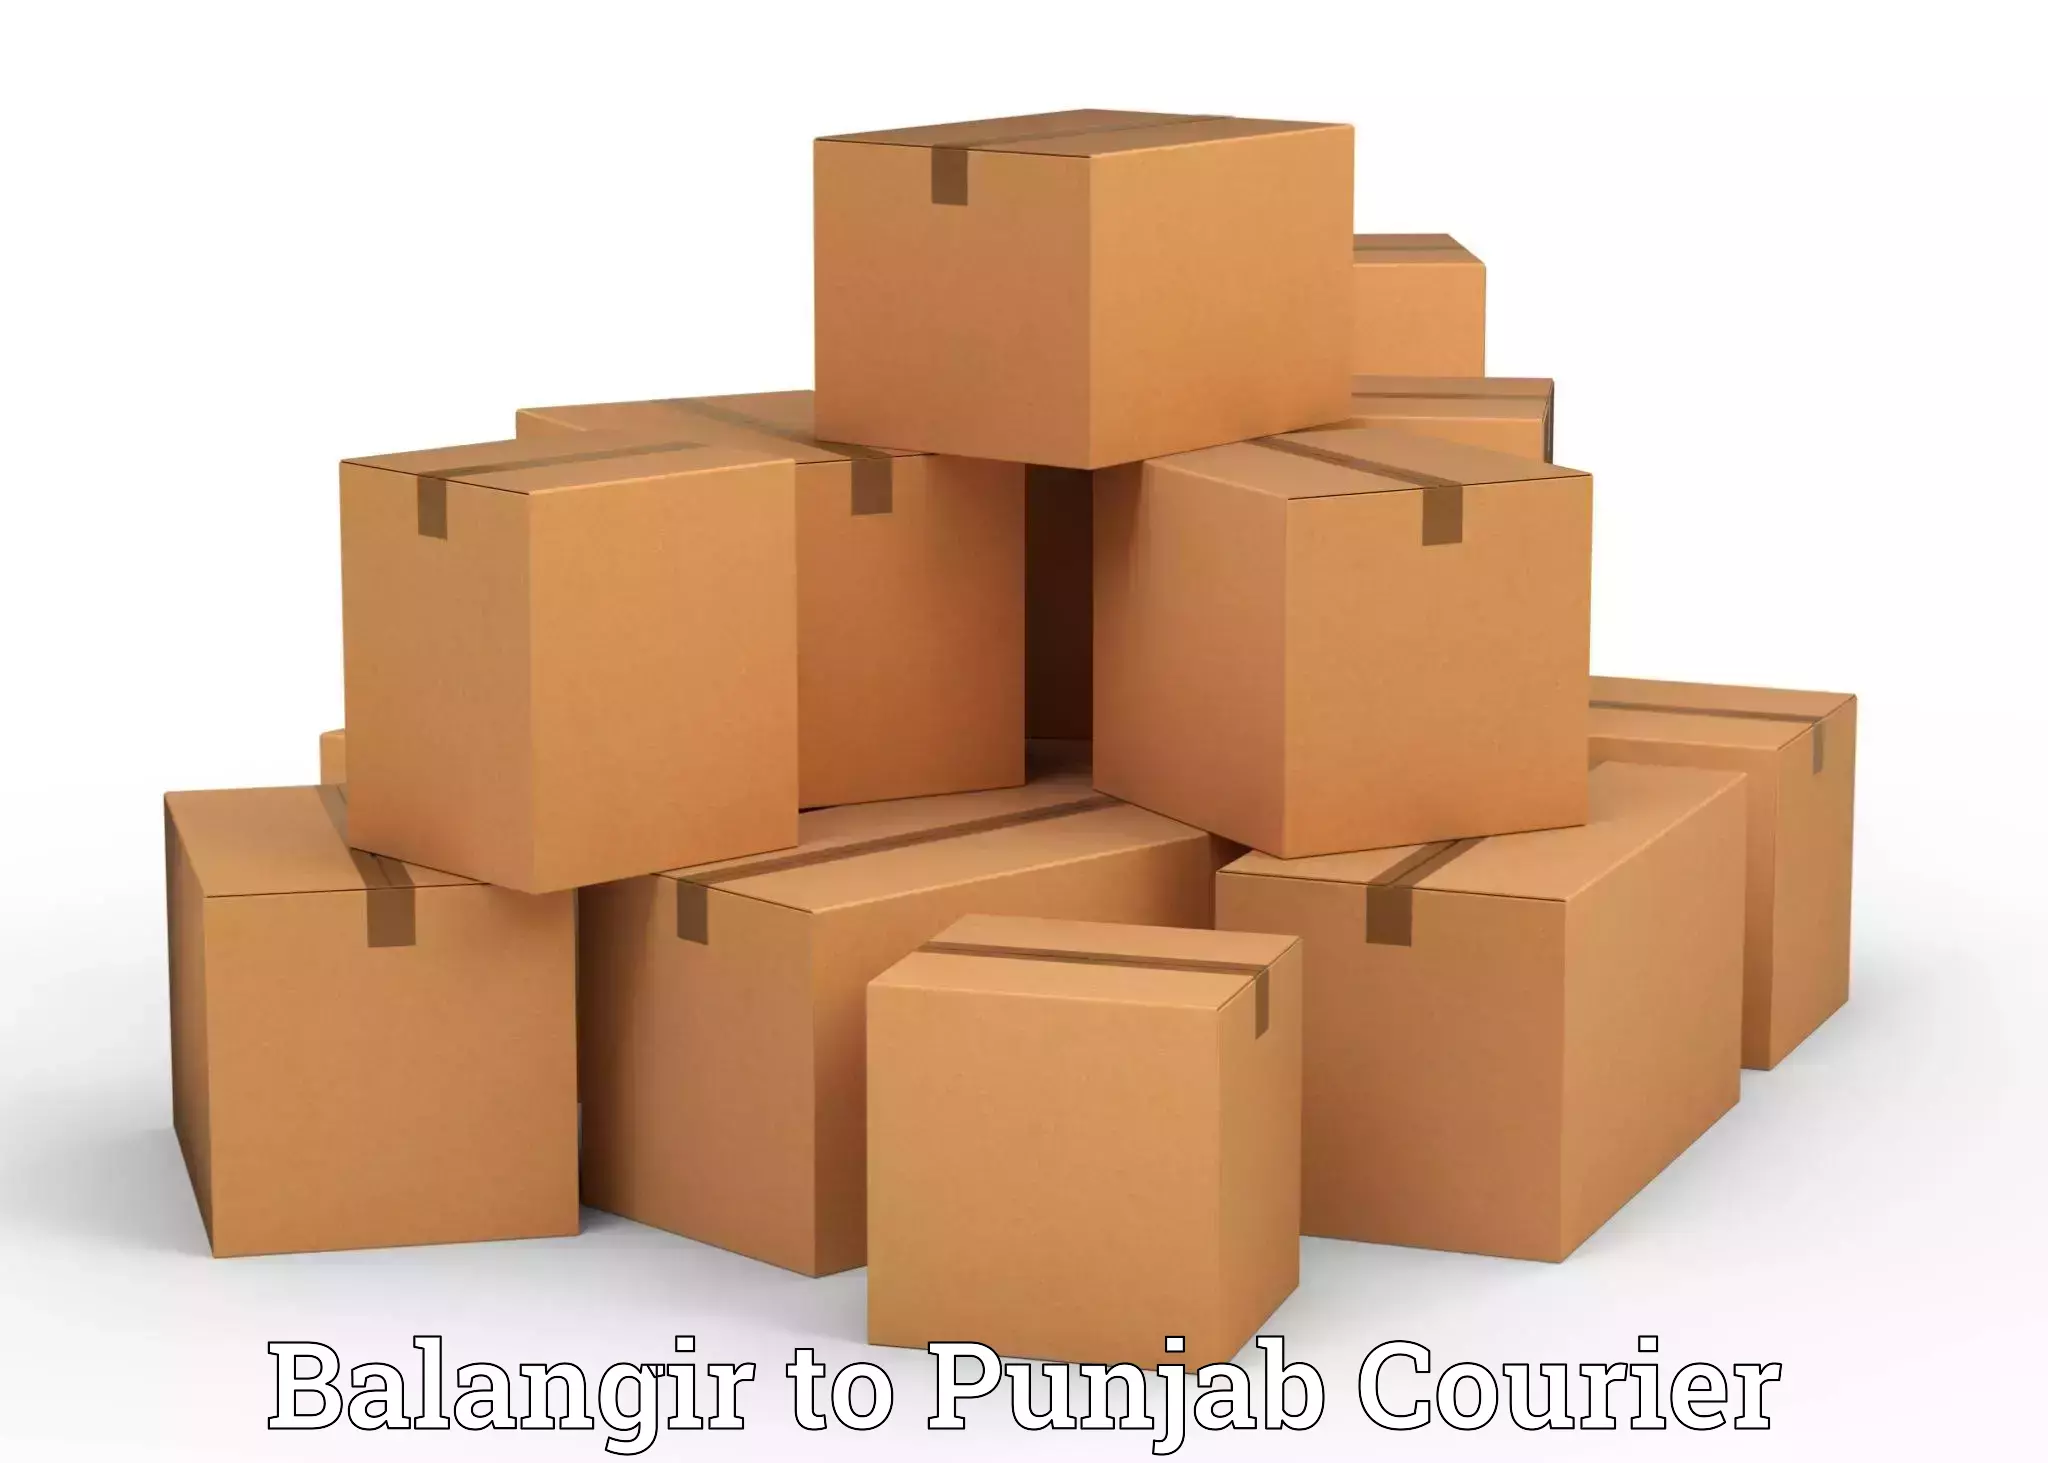 Professional moving assistance Balangir to Punjab